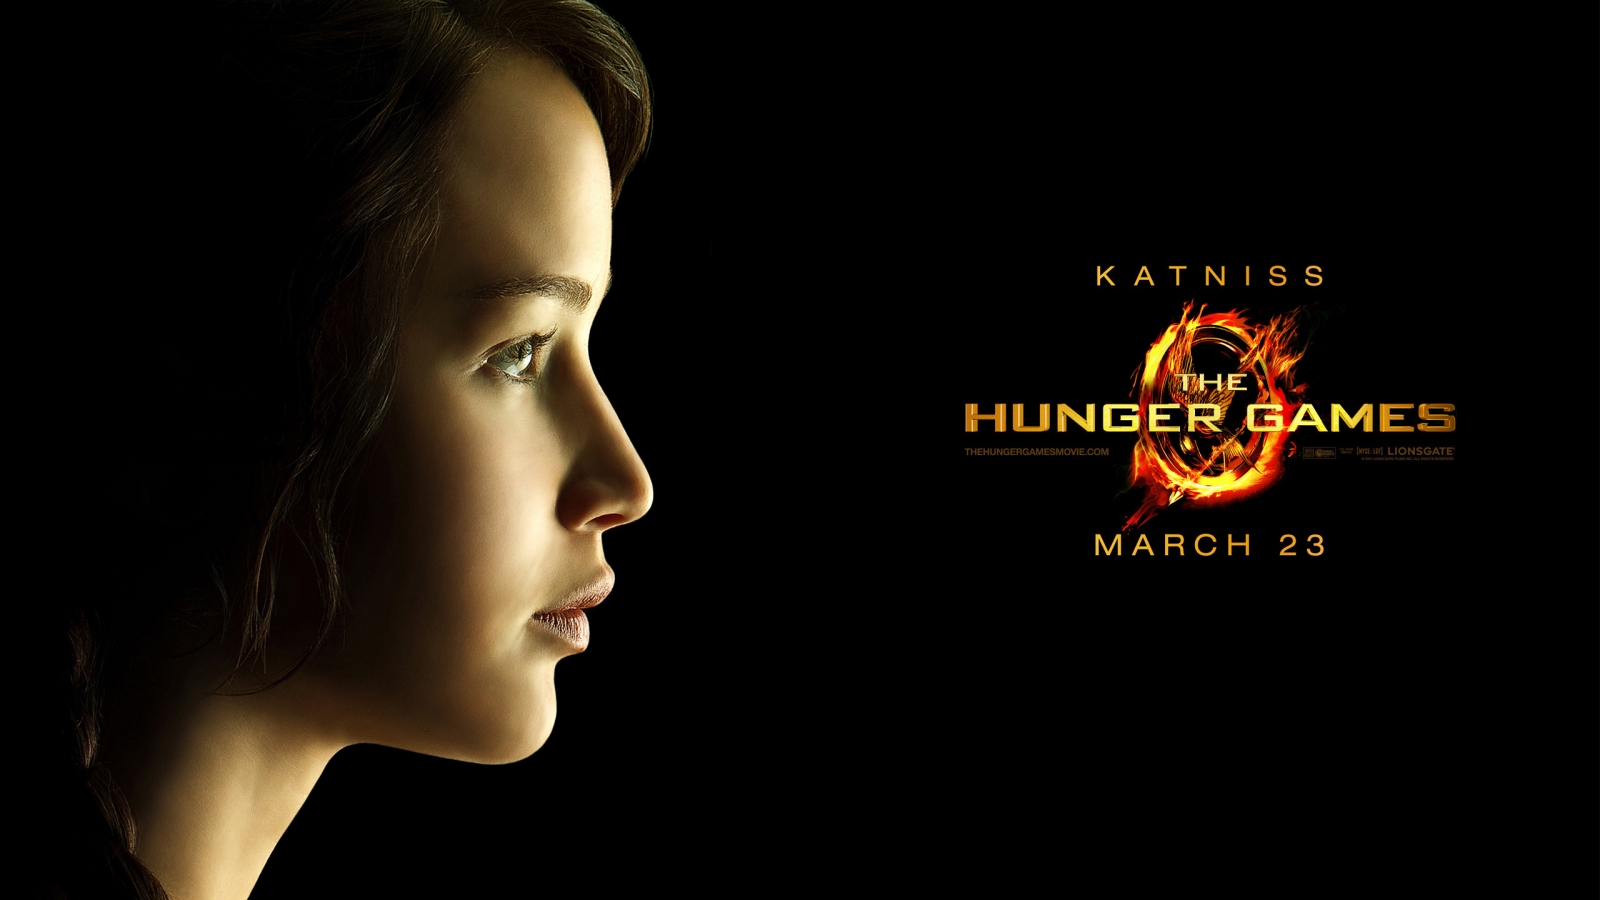 The Hunger Games Katniss for 1600 x 900 HDTV resolution